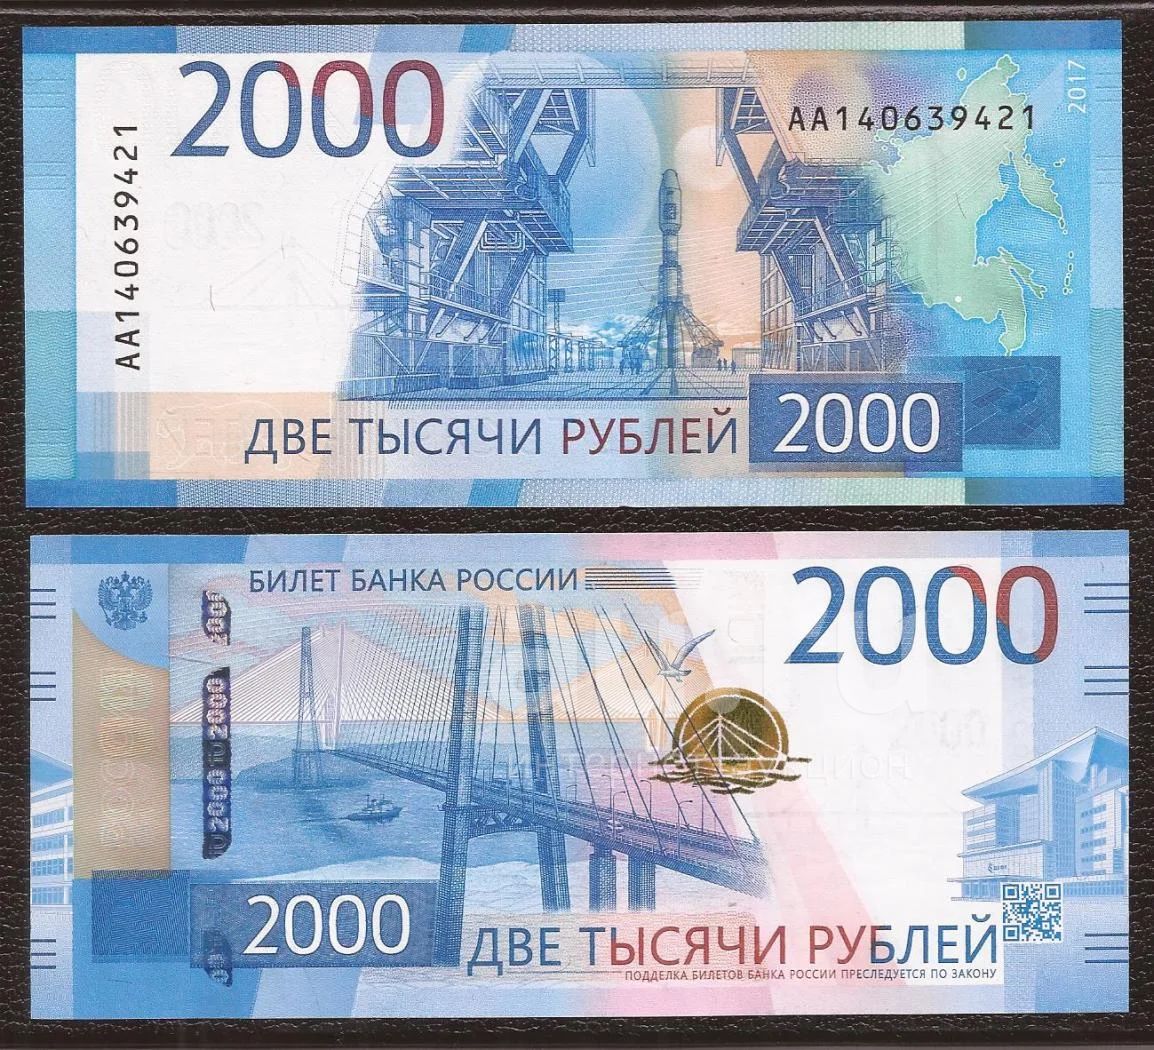 Купюра. Банкноты банка России 2000. Деньги две тысячи рублей. Деньги одна купюра 2000. 2 Тысячи руб с двух сторон.